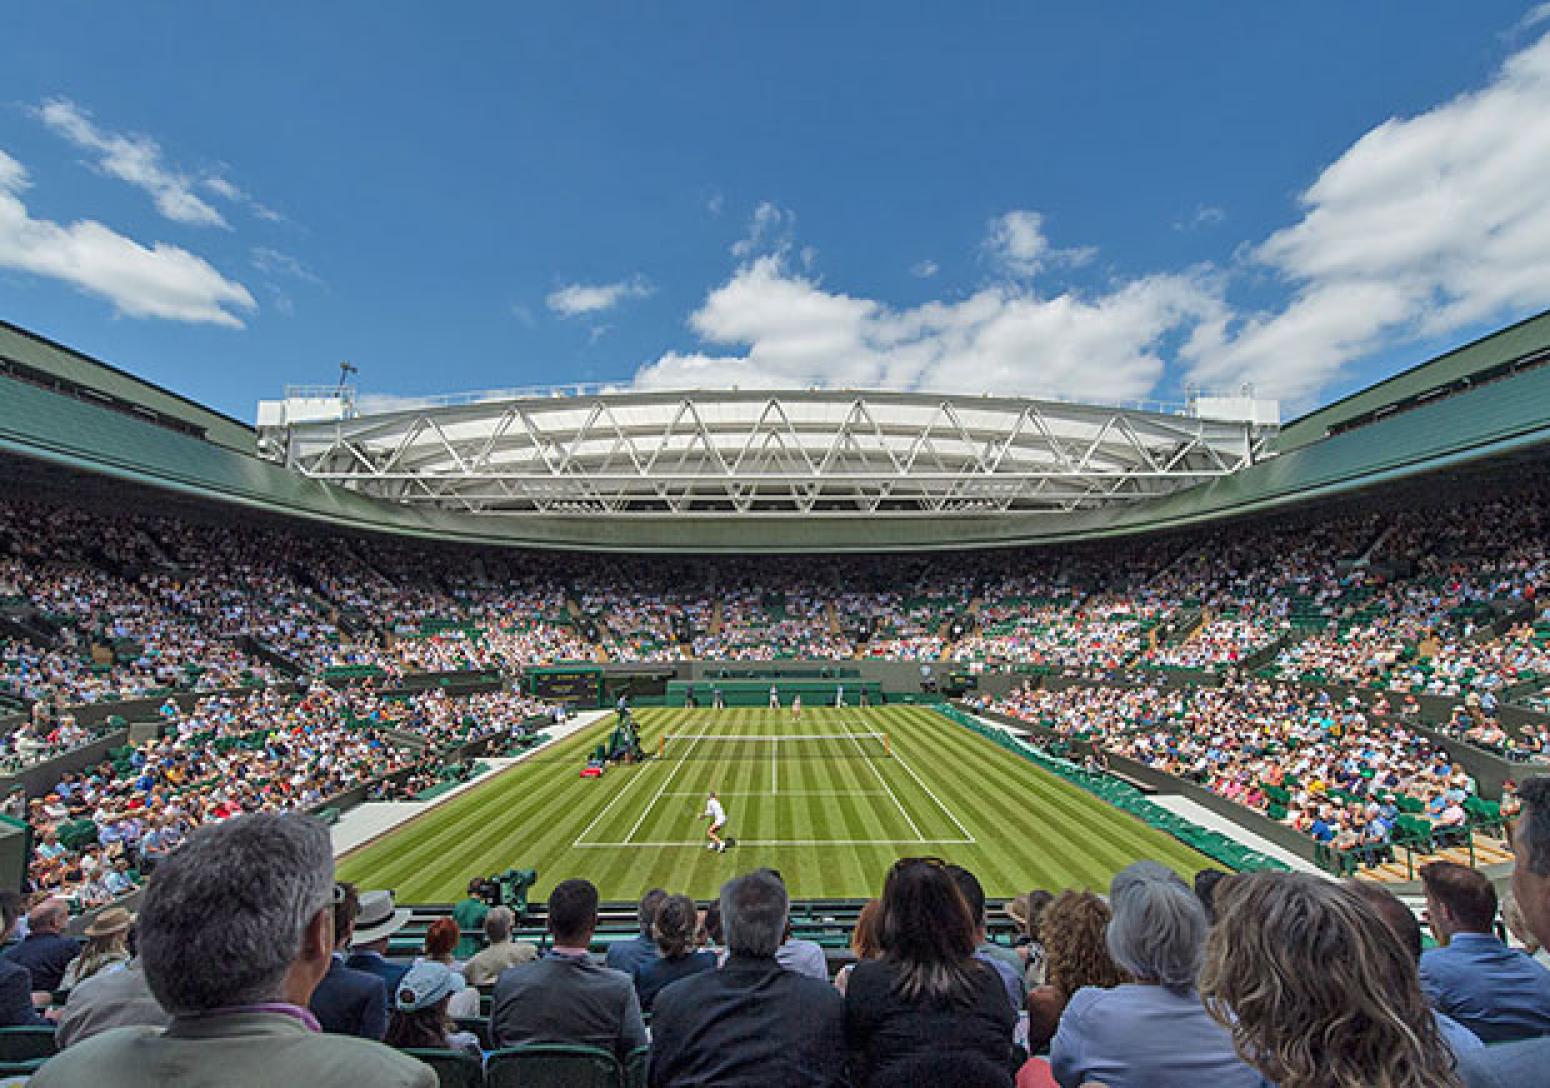 Wimbledon Court 1